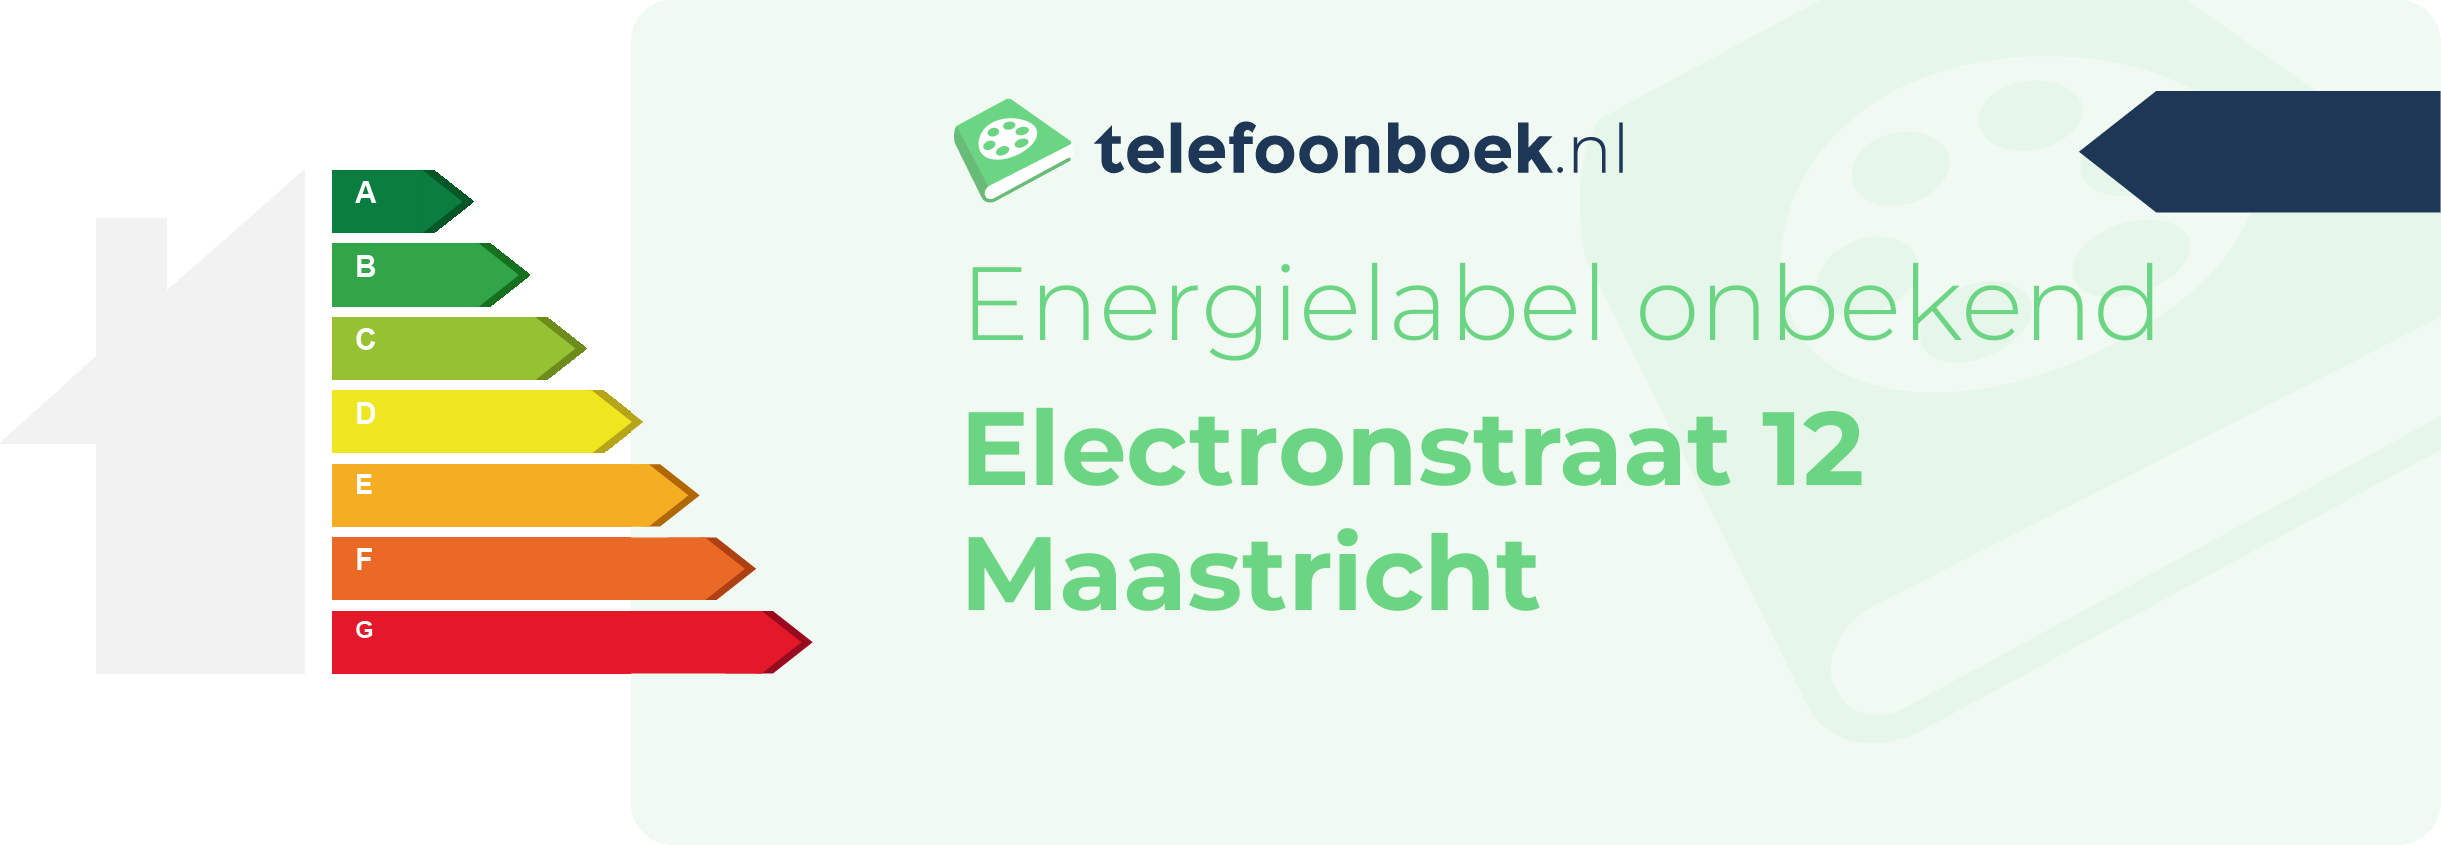 Energielabel Electronstraat 12 Maastricht